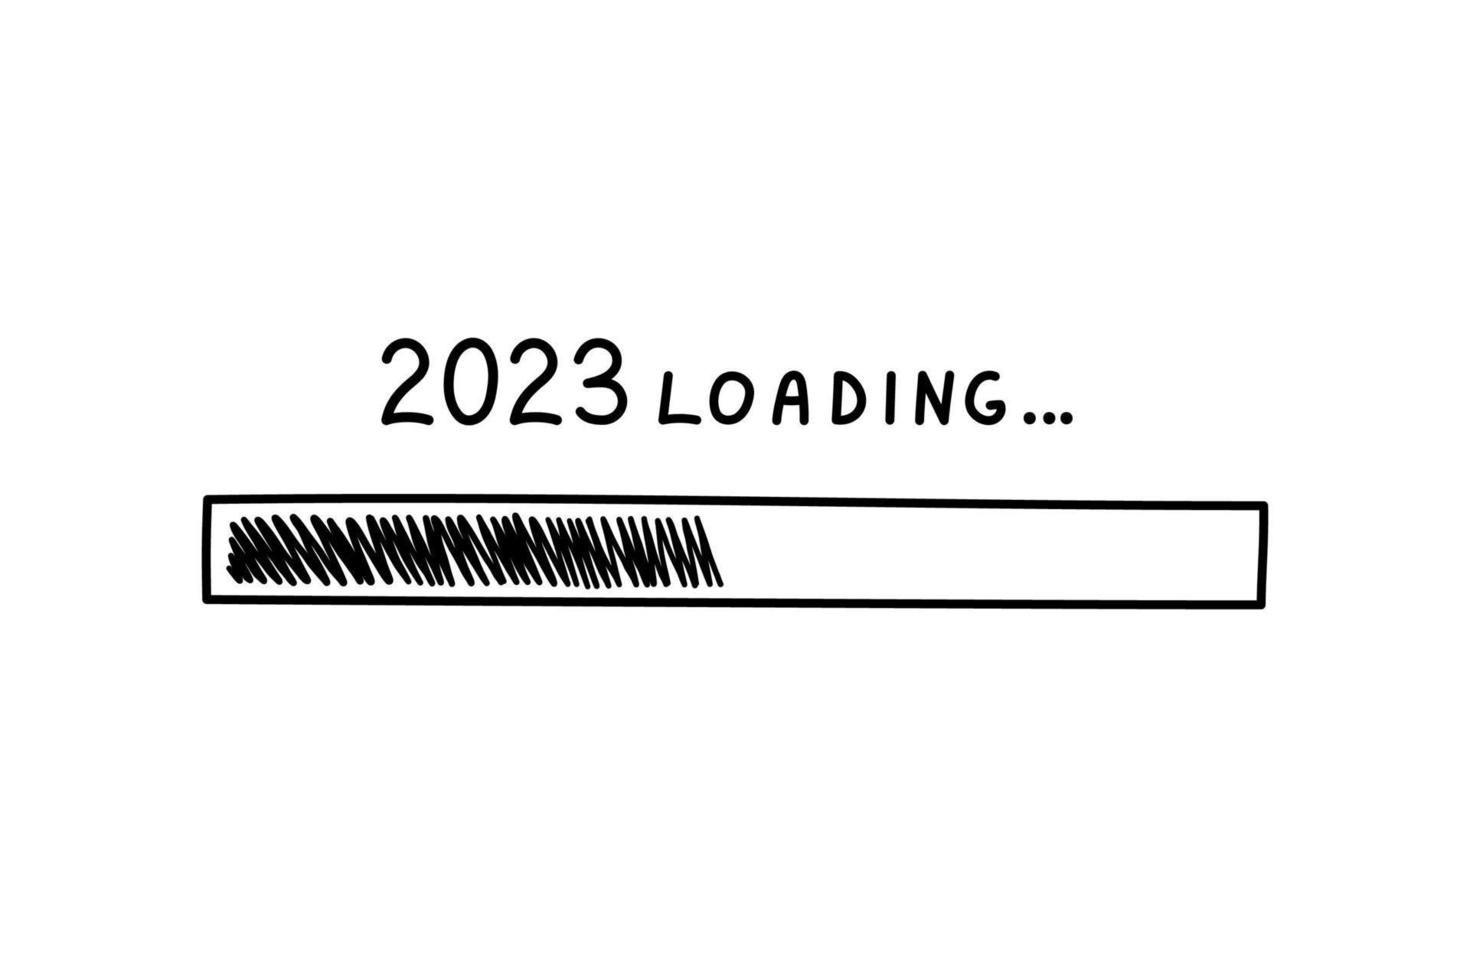 barra de progreso 2023 año nuevo en estilo de fideos, ilustración vectorial. símbolo de carga dibujado a mano, elemento aislado negro sobre un fondo blanco. barra de carga de croquis para impresión y diseño vector